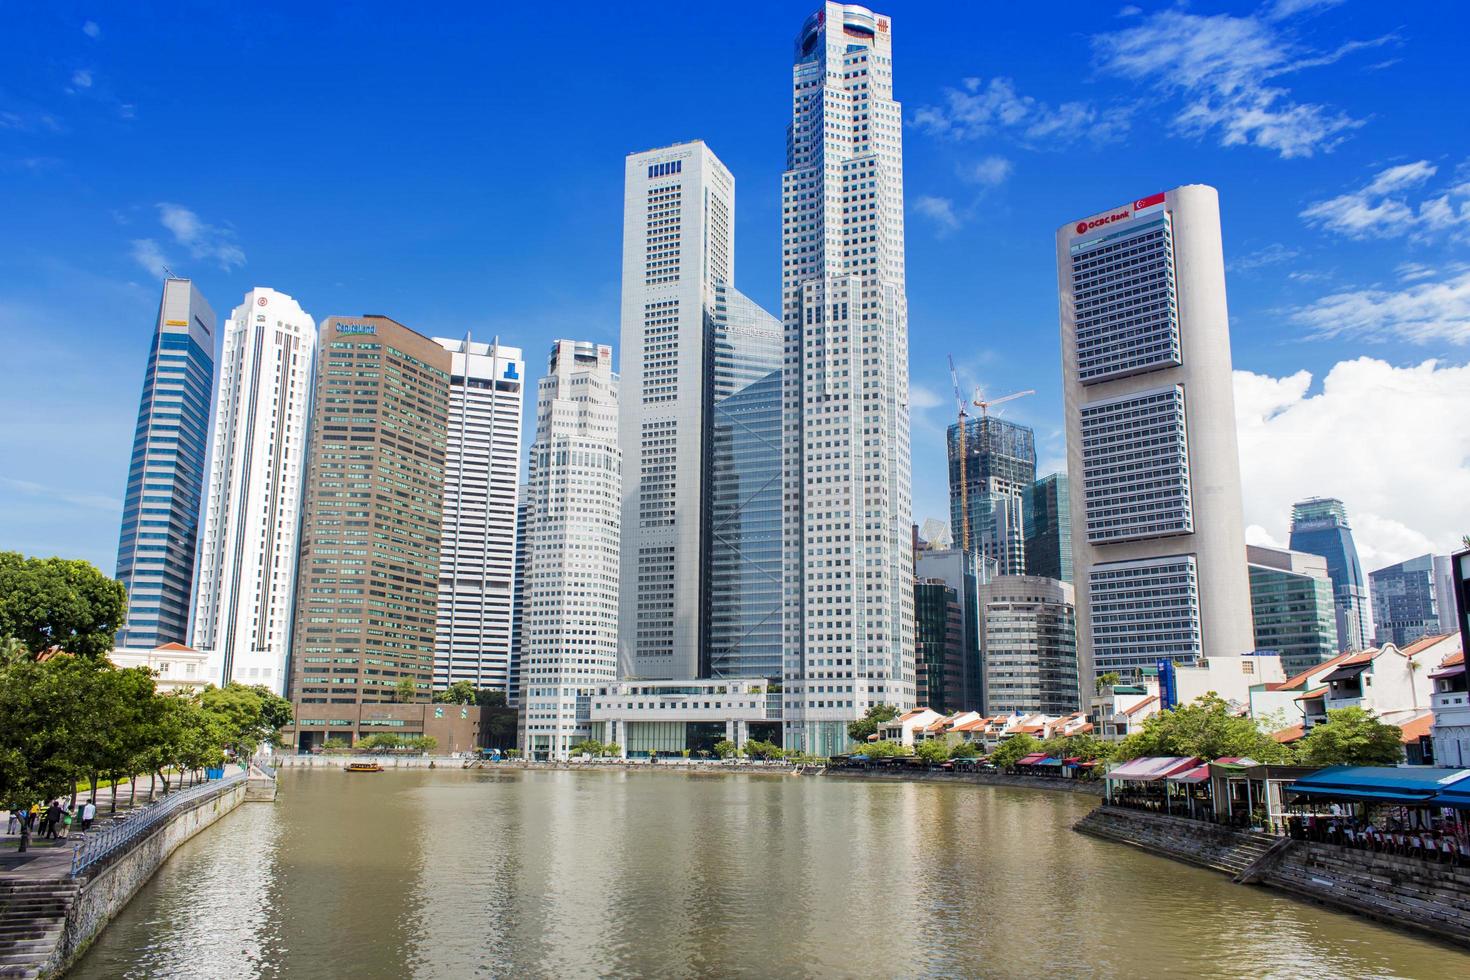 singapore, 2014 - moderna skyskrapor i centrala affärsdistriktet i singapore. det är centrum för singapores finansiella verksamhet med många viktiga och betydelsefulla finansiella byggnader. foto